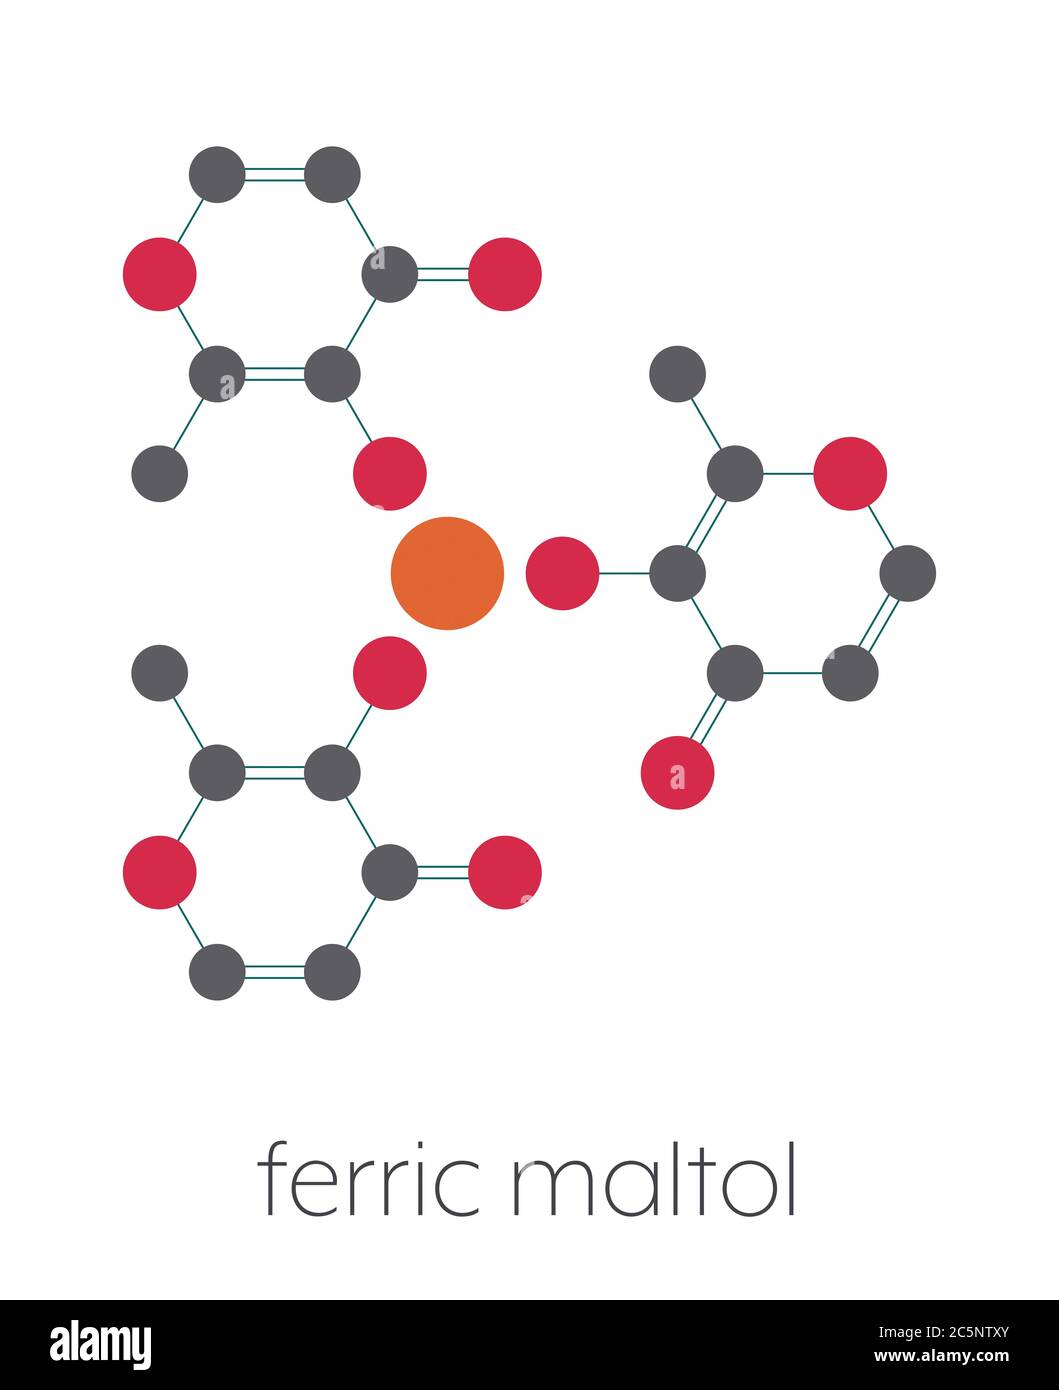 Molécula de medicamento ferric maltol con deficiencia de hierro. Fórmula  esquelética estilizada (estructura química): Los átomos se muestran como  círculos codificados por colores: Hidrógeno (oculto), carbono (gris),  oxígeno (rojo), hierro (marrón naranja